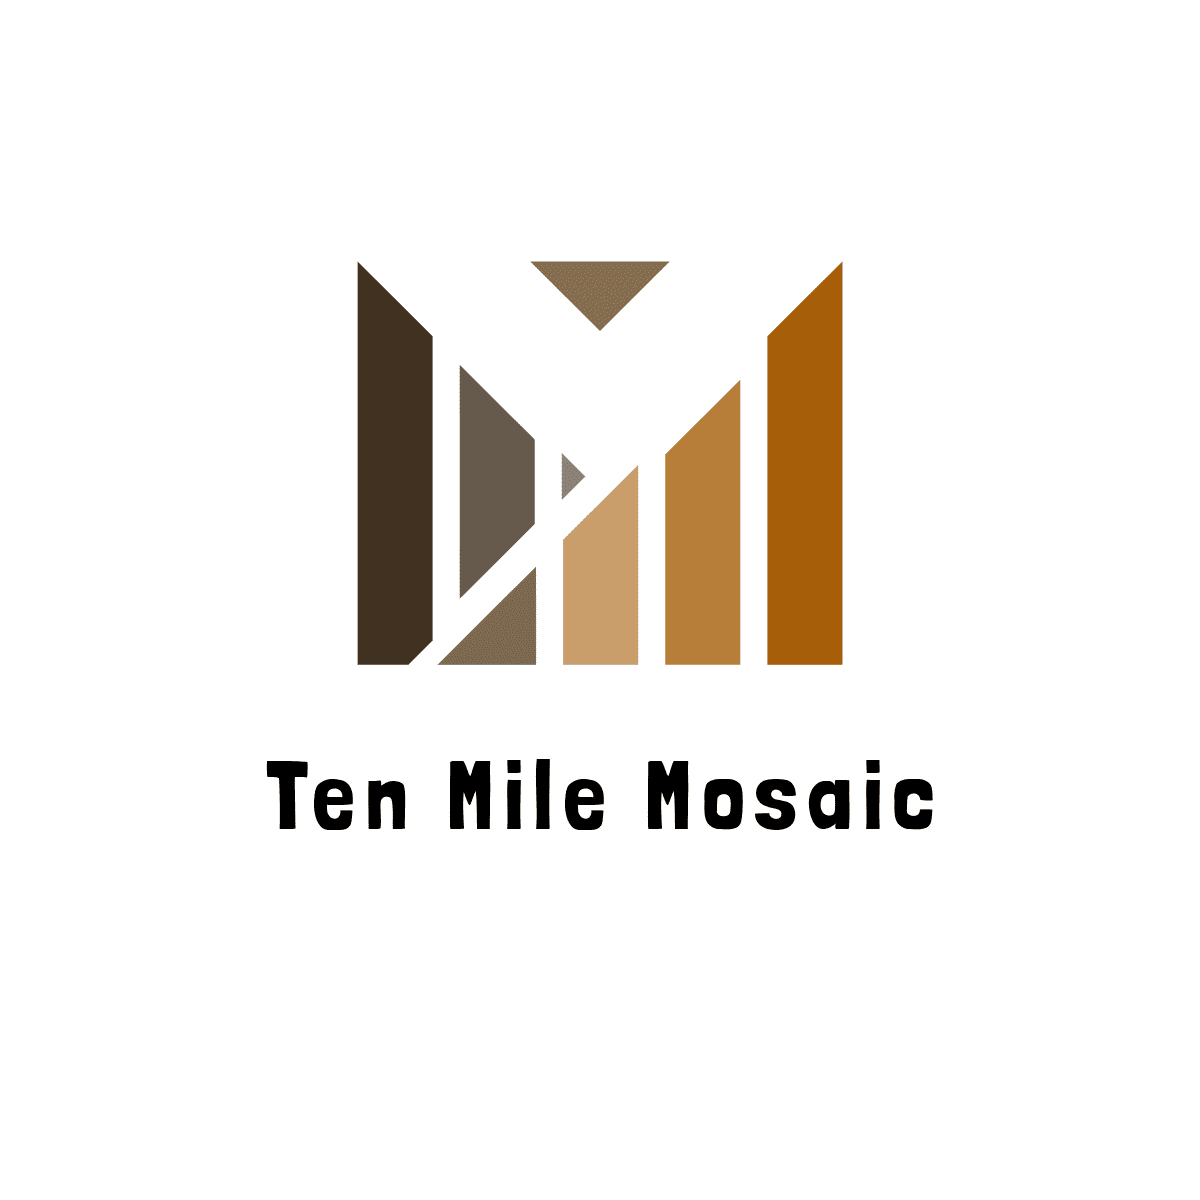 Ten Mile Mosaic